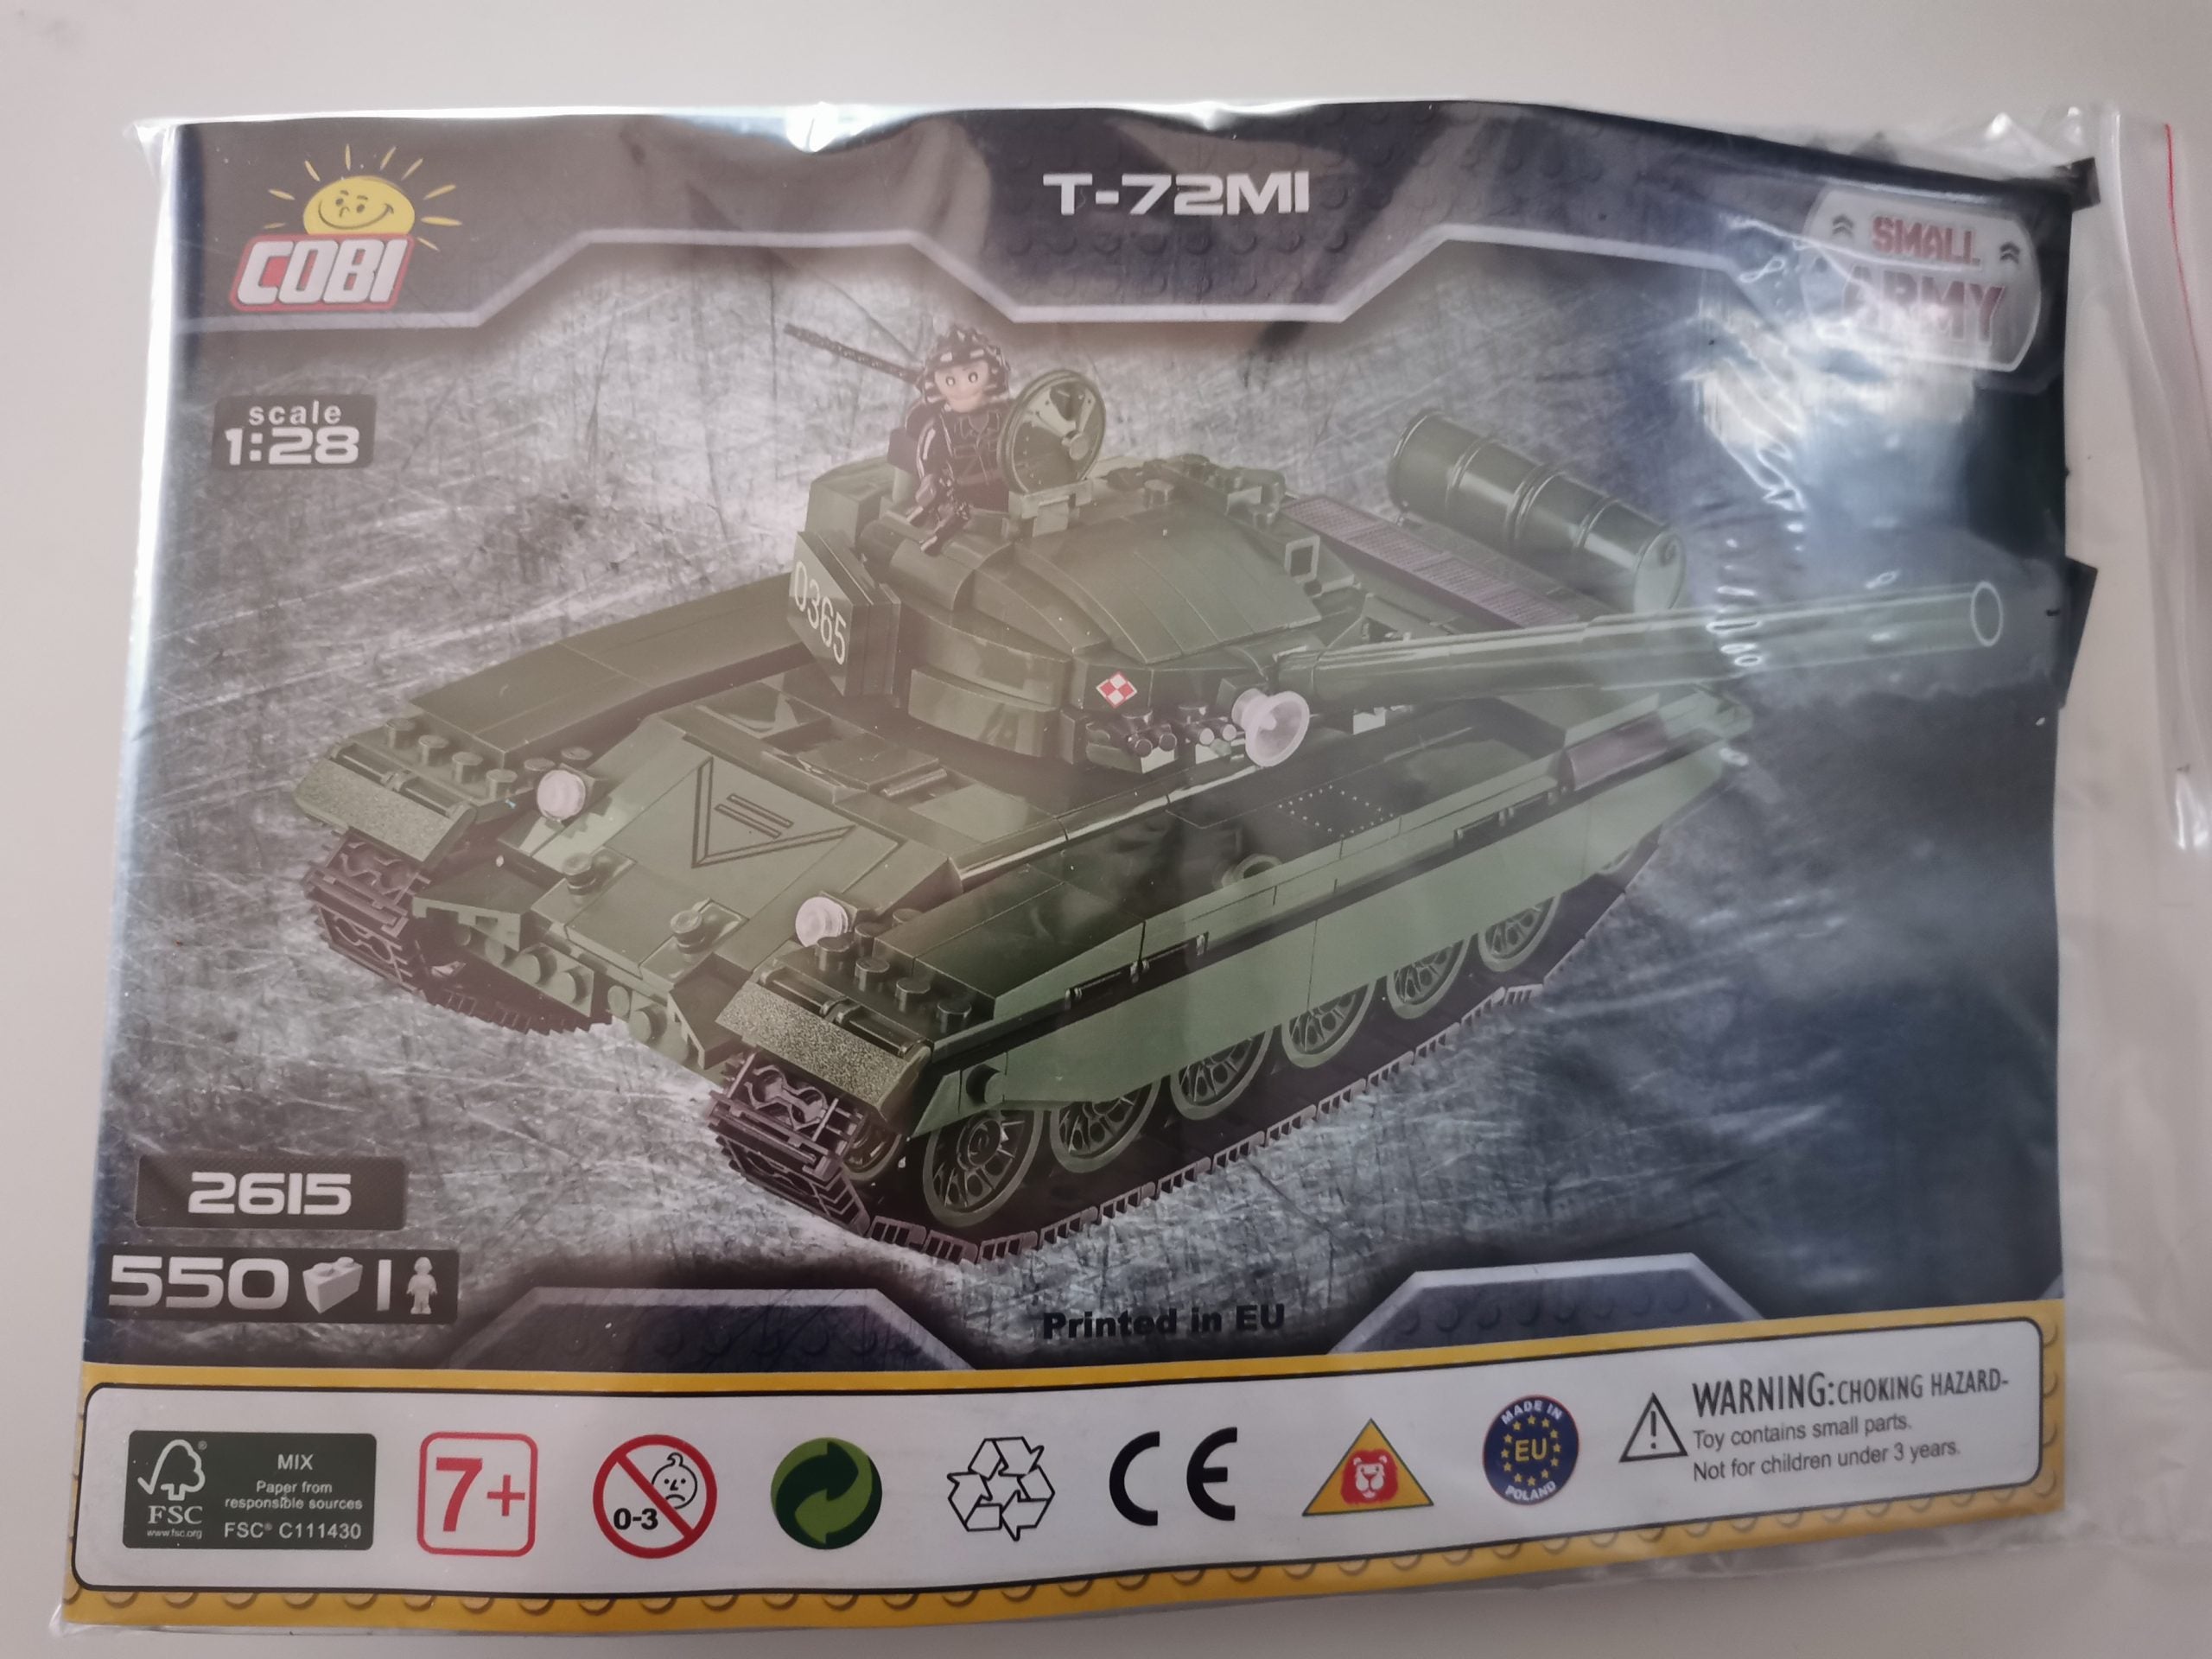 Cobi 2615 T-72M1 used